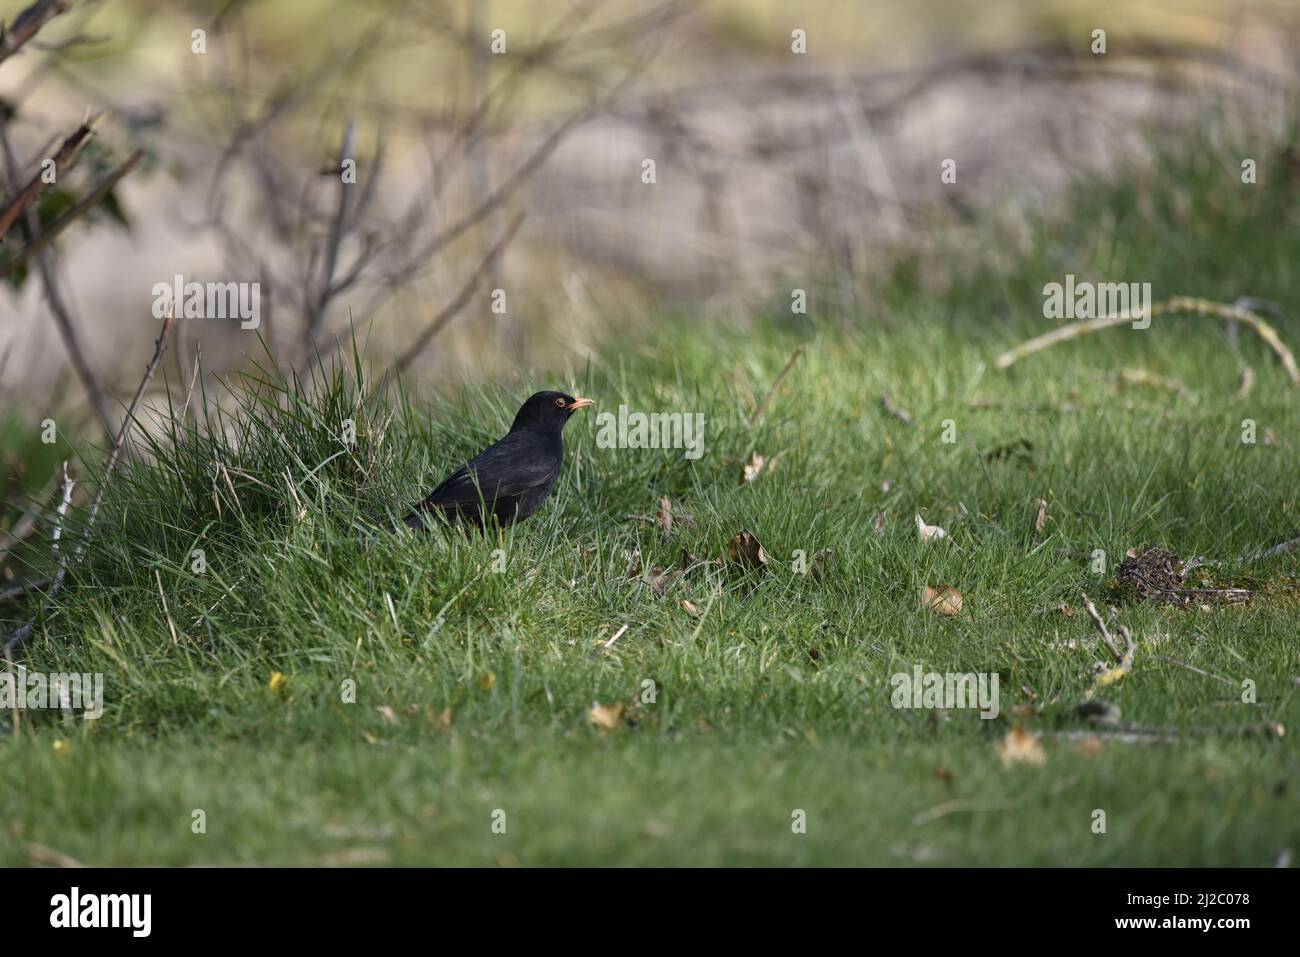 Maschio Blackbird comune (Turdus merula) in piedi a sinistra dell'immagine su erba accanto alla riva del fiume, nel profilo destro, con spazio copia a destra, nel Regno Unito in primavera Foto Stock